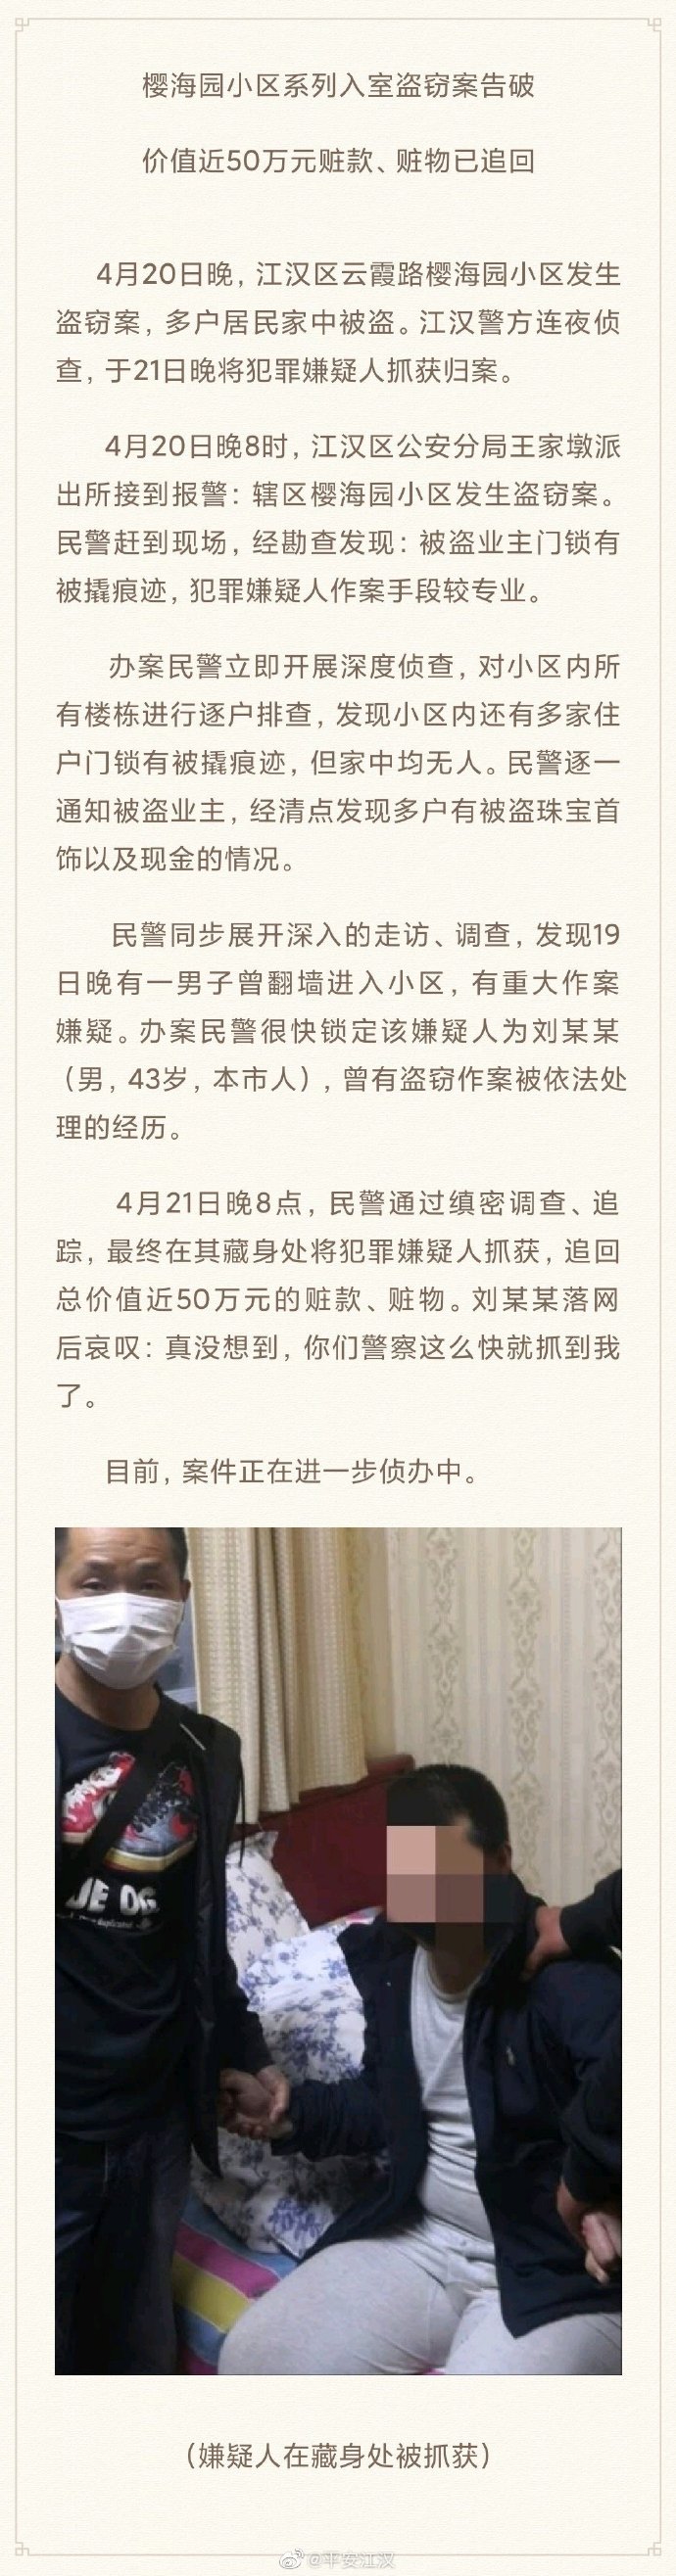 武汉市江汉区系列入室盗窃案告破 价值近50万元赃款、赃物已追回